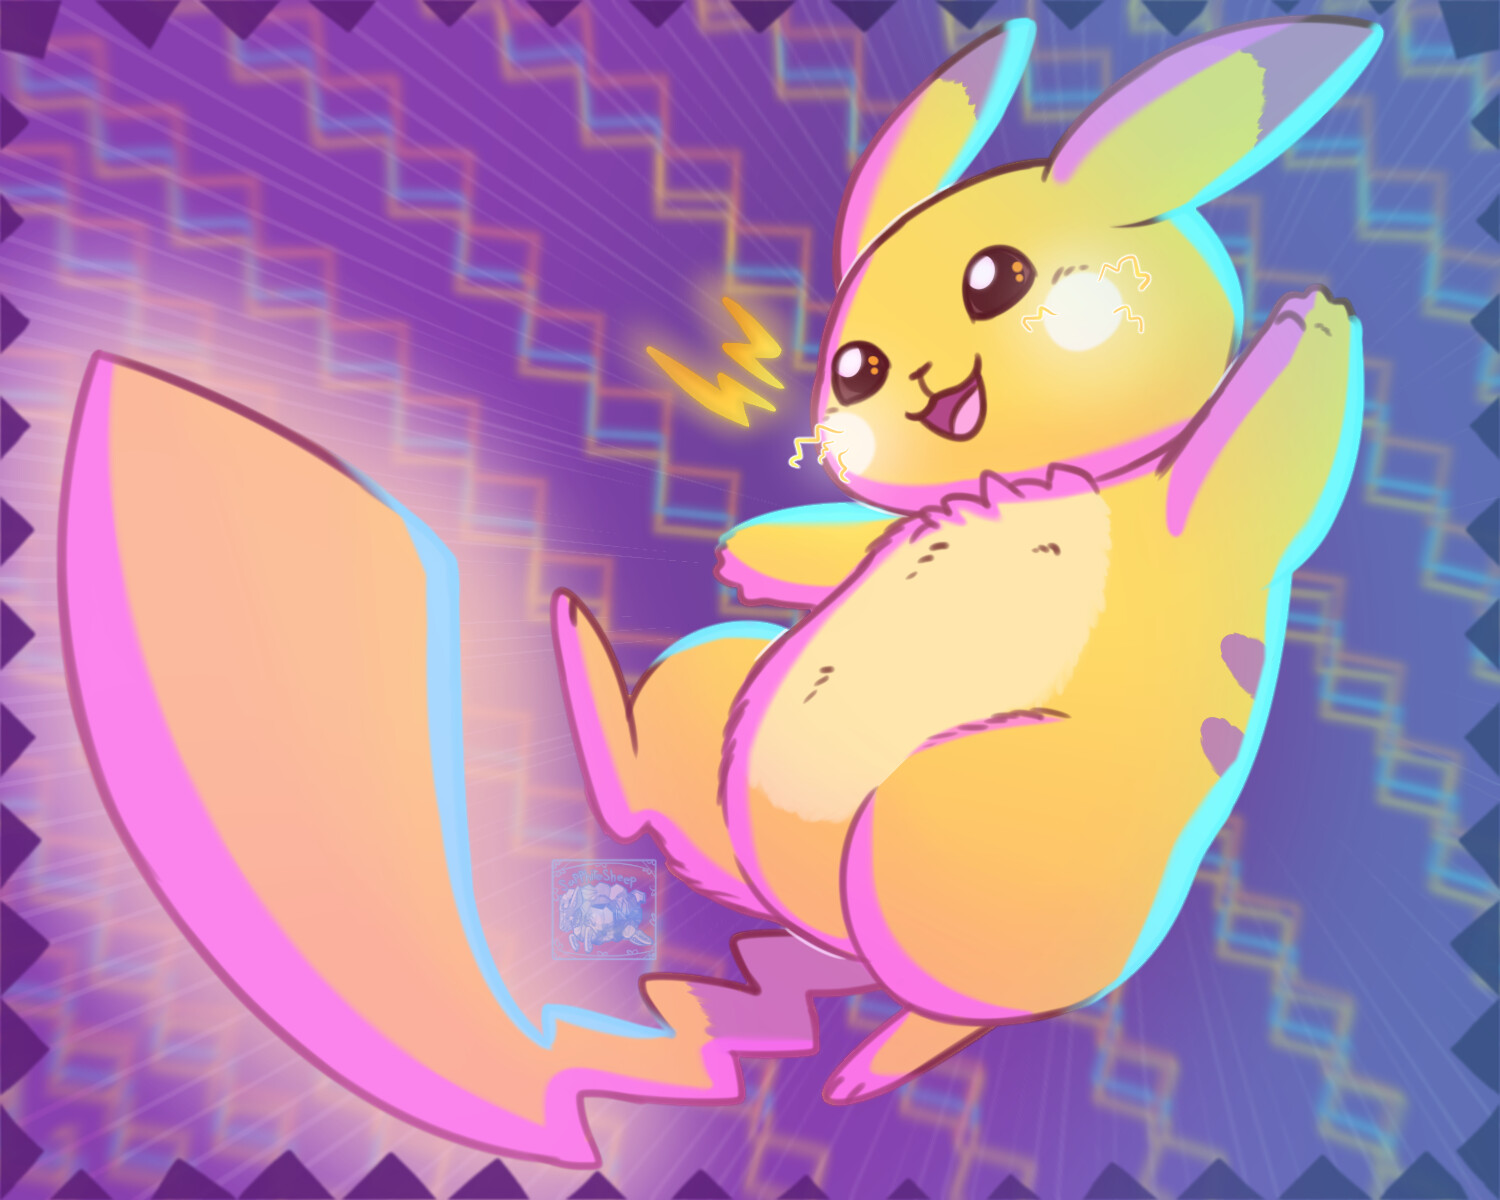 Pikachu - #025 -  Pokédex